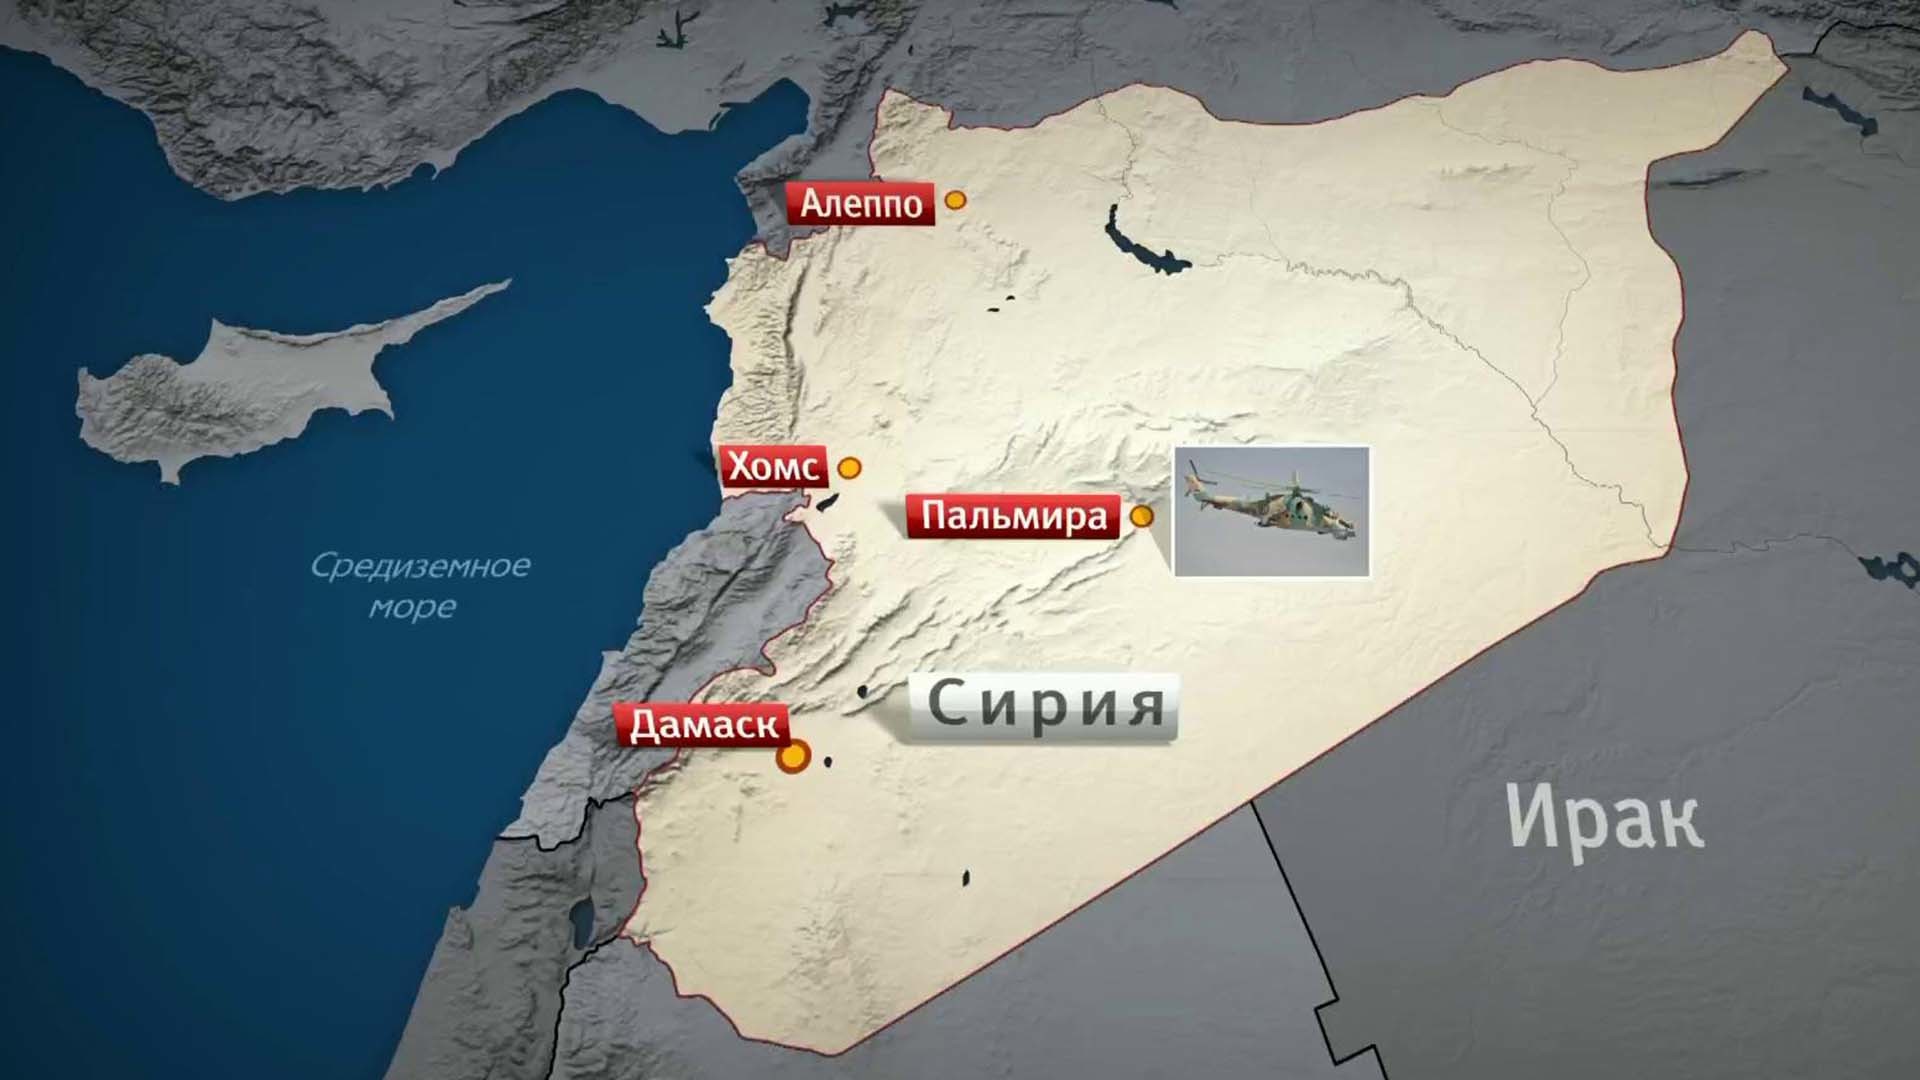 Сколько погибших в сирии российских. Хмеймим на карте. Пальмира на карте Сирии. Авиабаза Хмеймим на карте в Сирии. Военный аэропорт Хмеймим Сирия на карте.